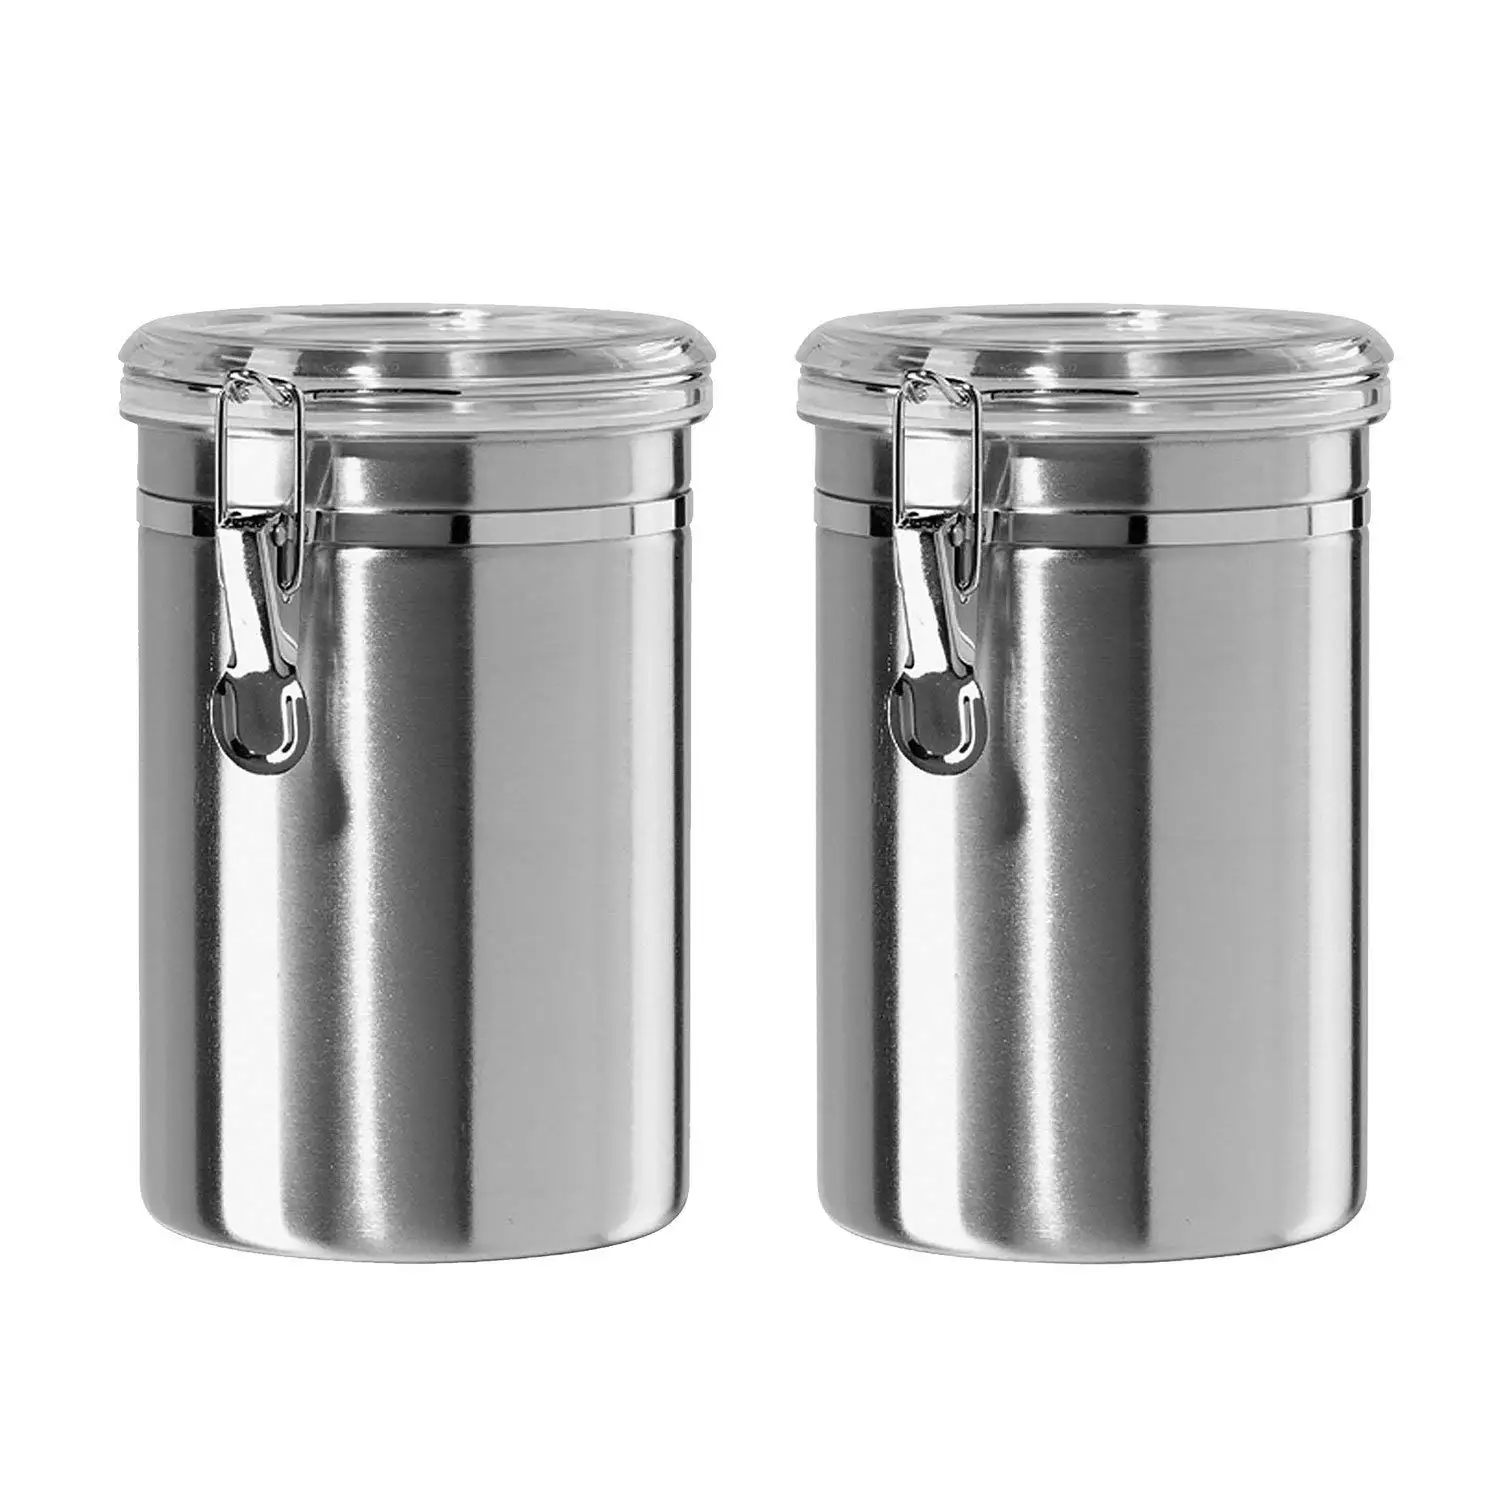 CHFL герметичные контейнеры наборы для кухни из нержавеющей стали-красивые для кухонной стойки, маленькие 32 унции, хранение пищи содержит